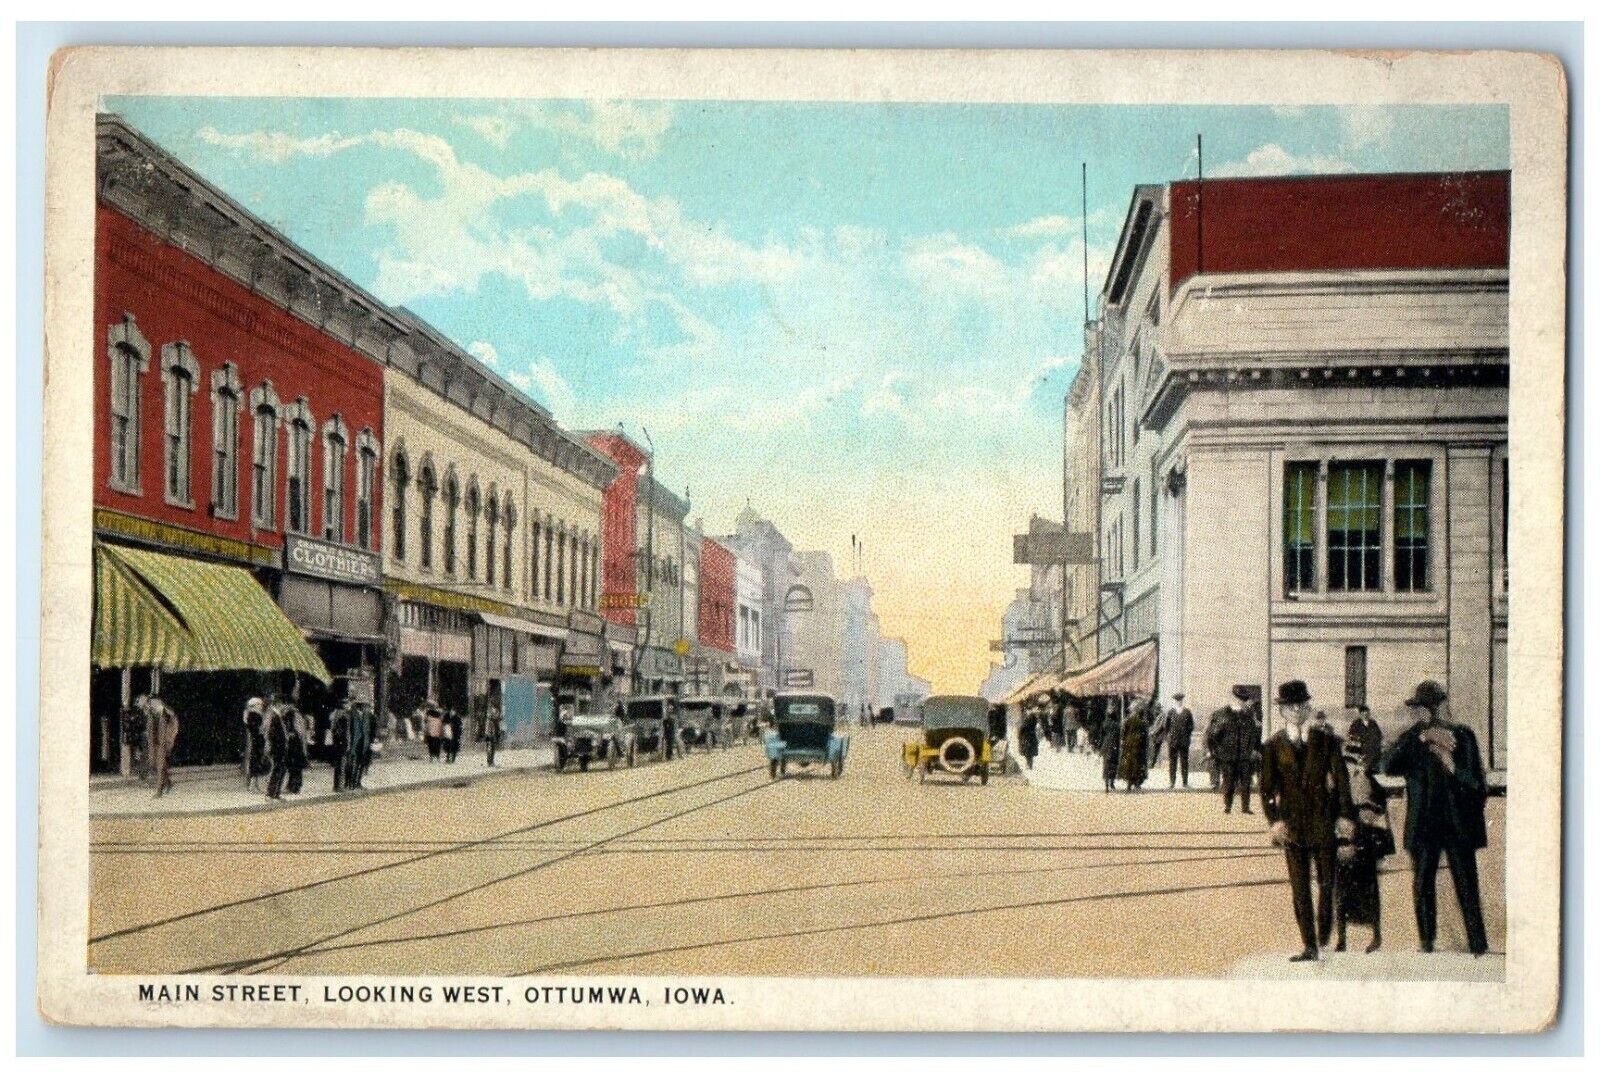 1928 Main Street Looking West Exterior Classic Cars Road Ottumwa Iowa Postcard